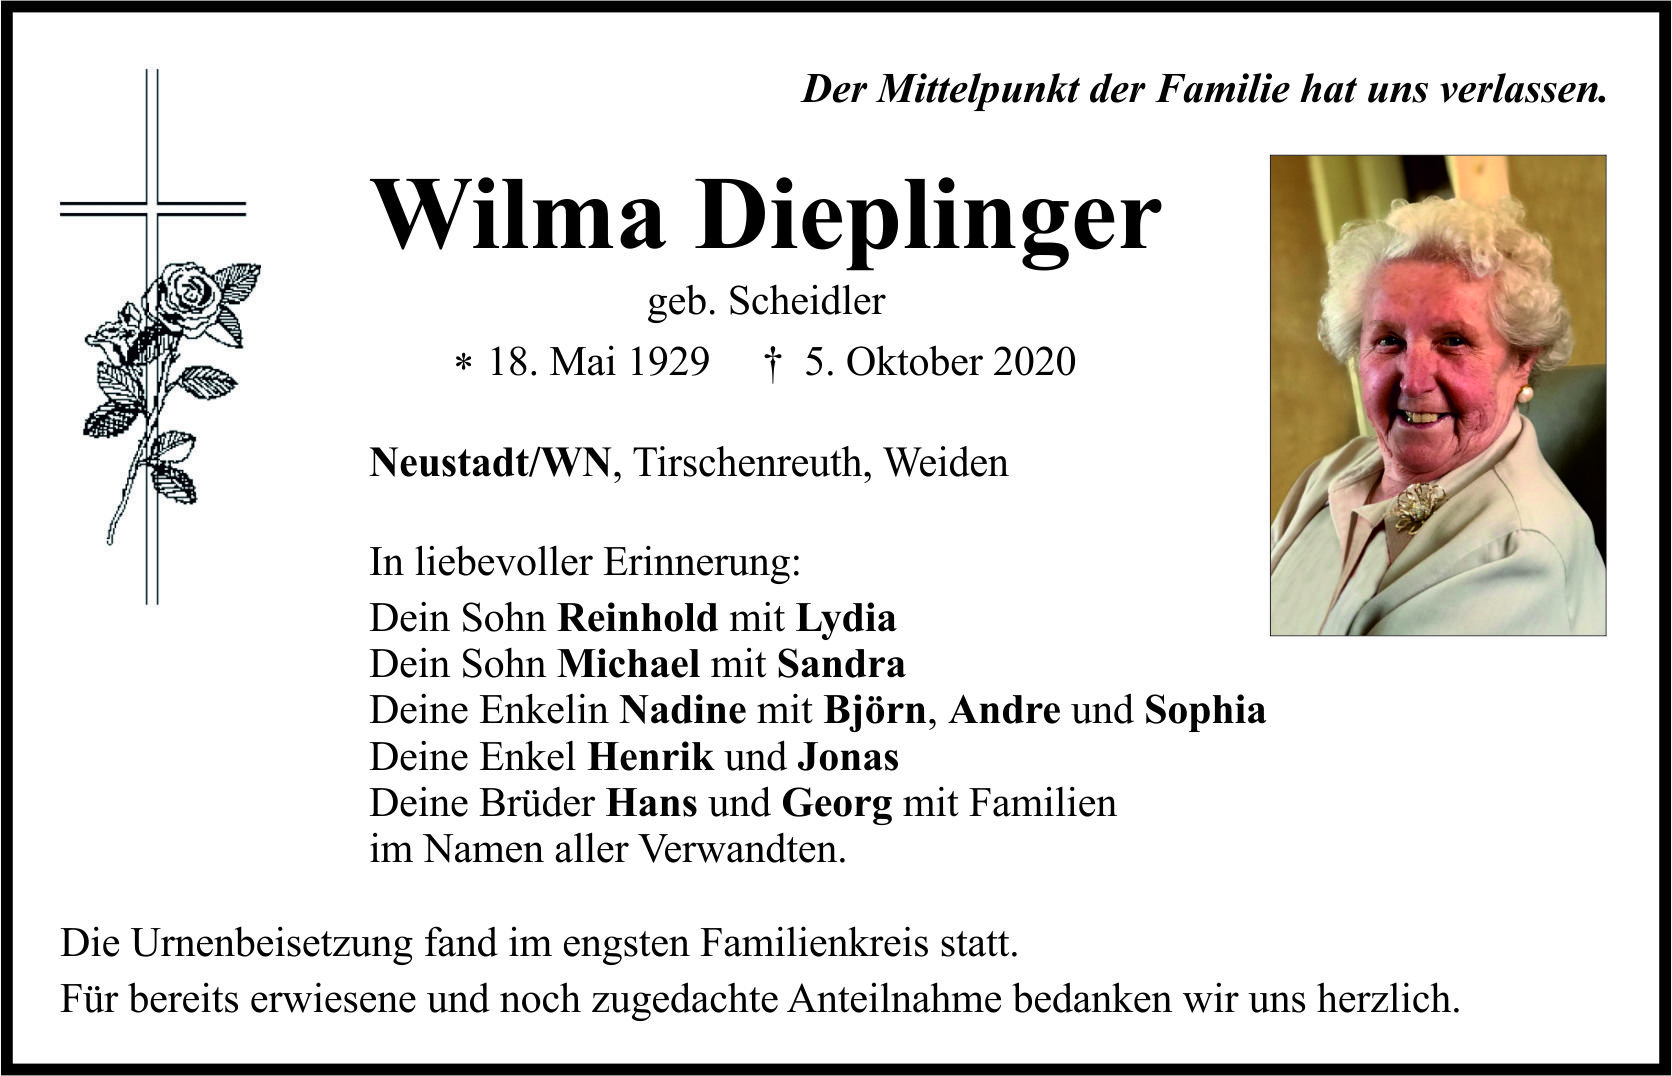 Traueranzeige Wilma Dieplinger, Neustadt.WN